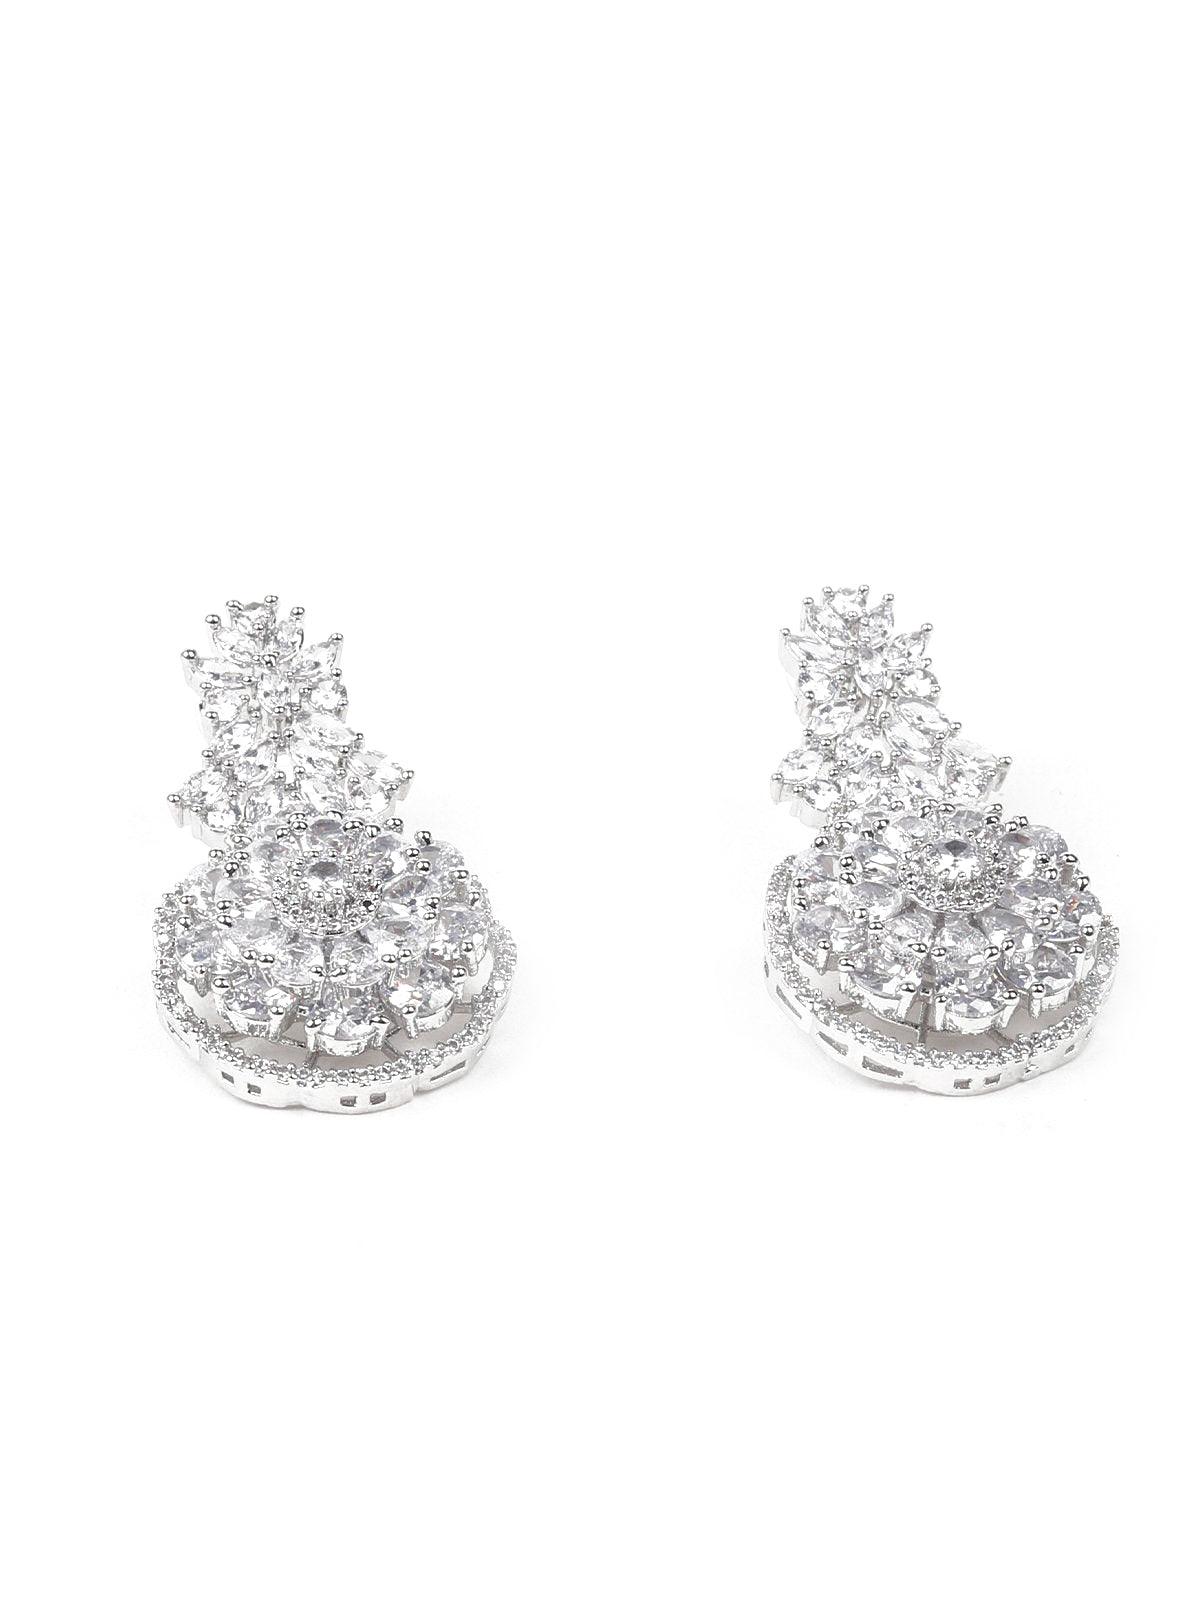 Exquisite Crystal-Embellished Princesses Necklace Set - Odette